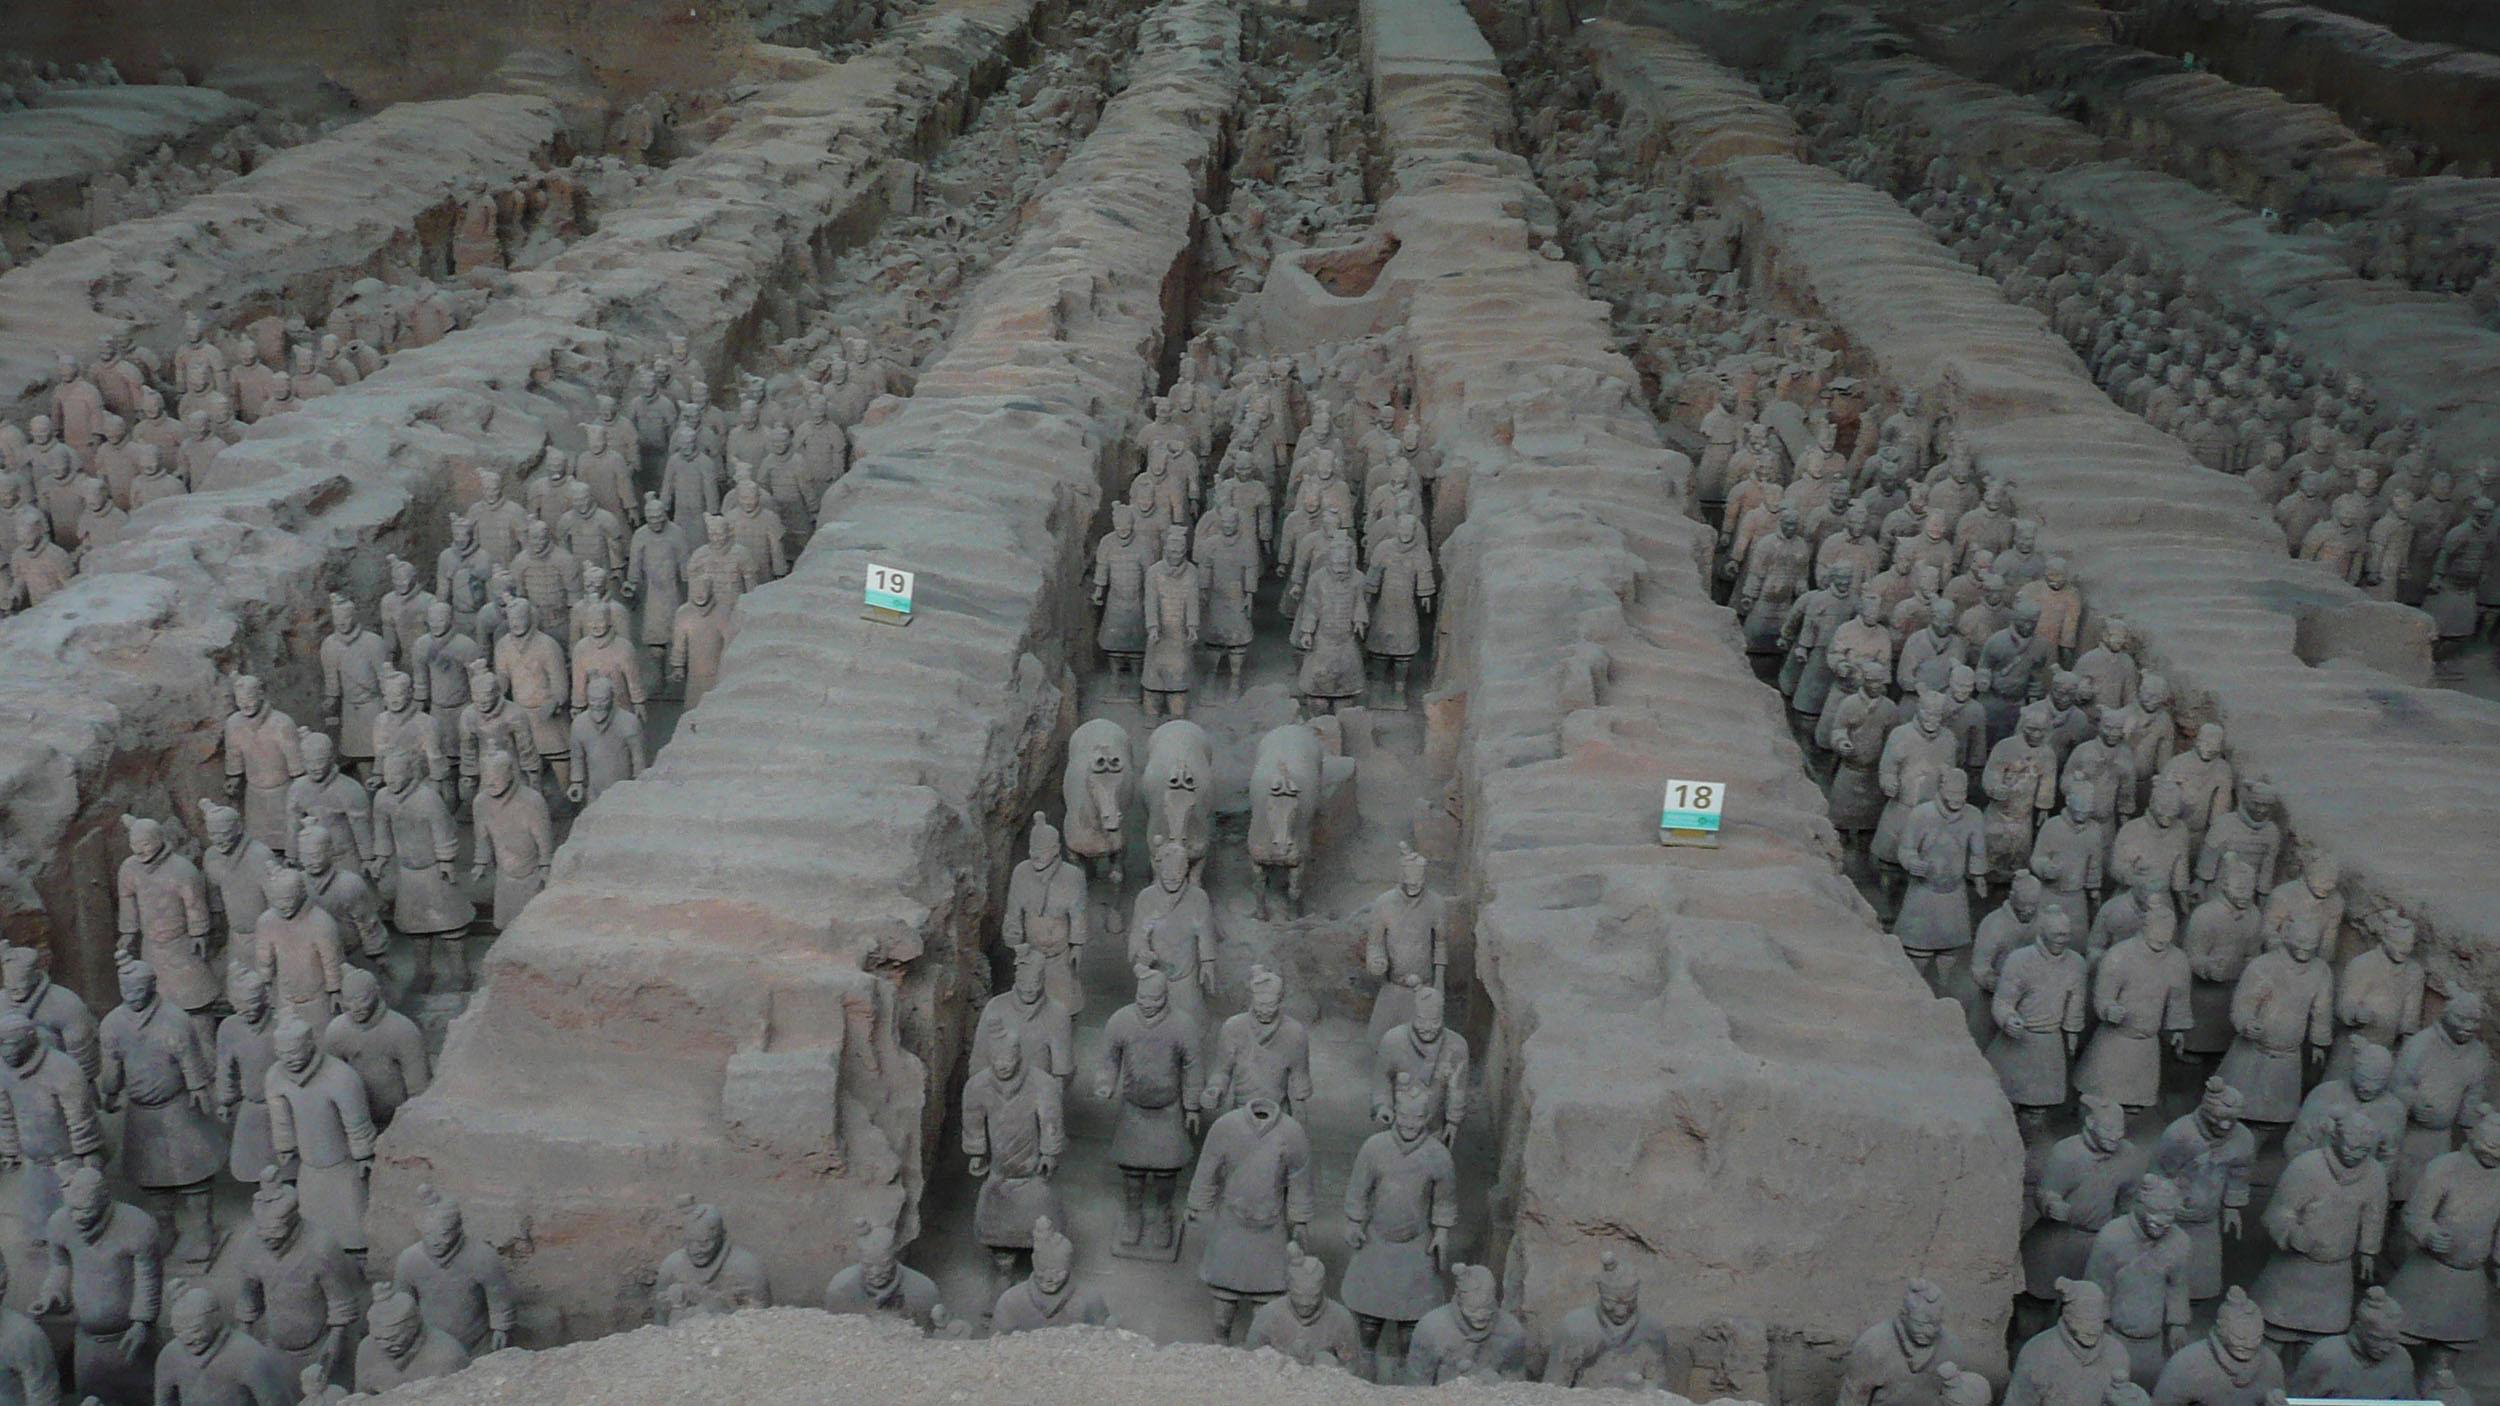 The Terracotta Warriors in Xian China